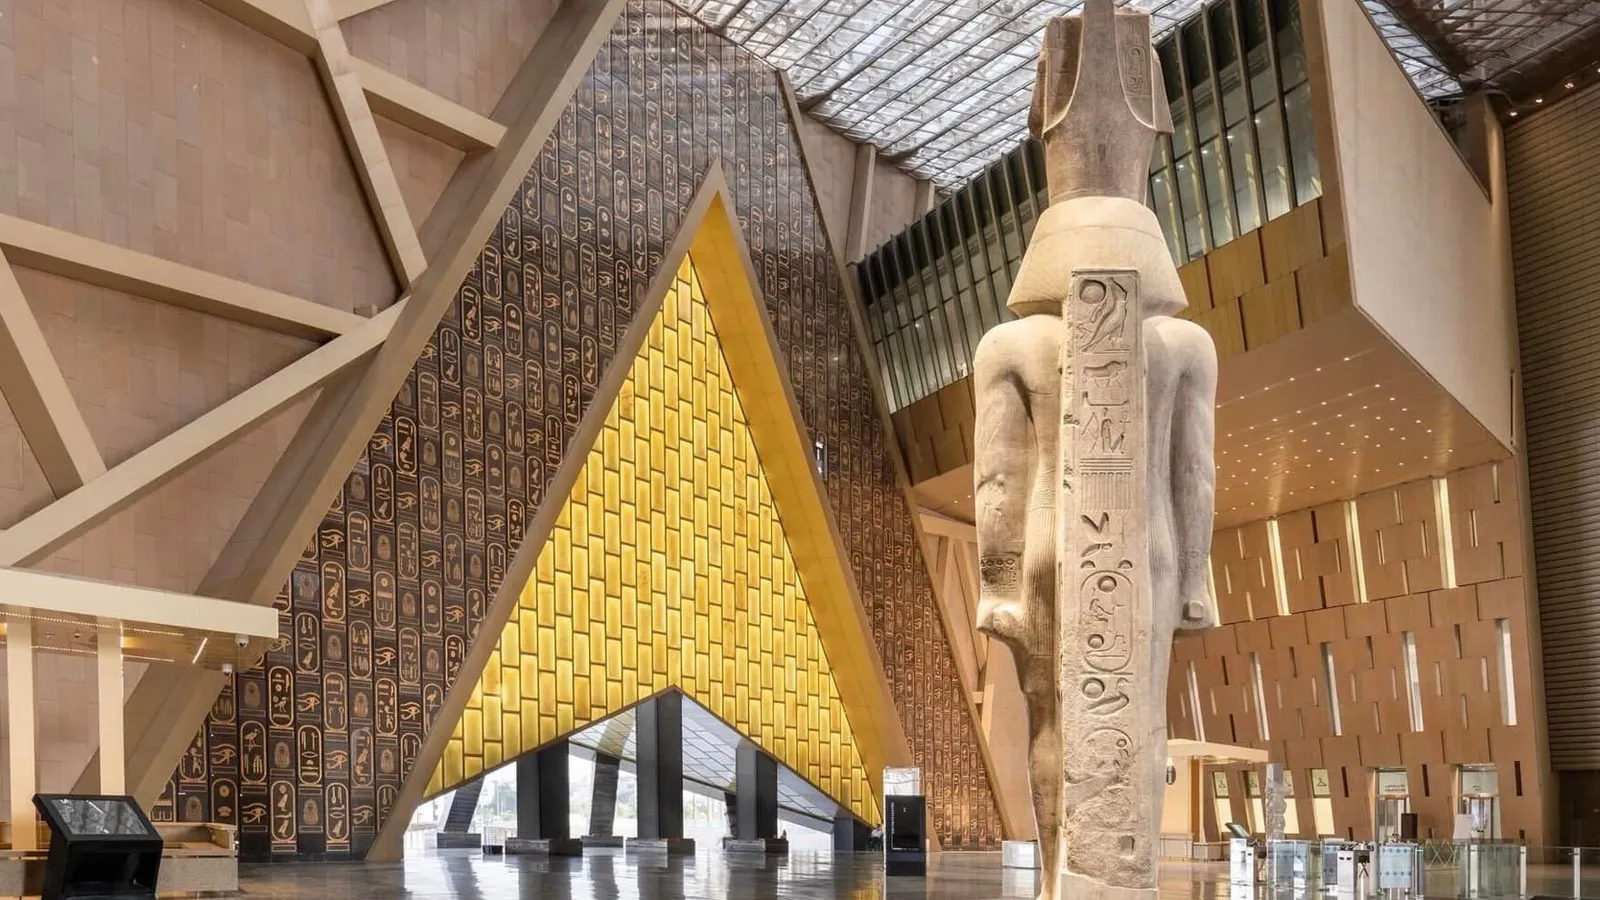 Nằm trên diện tích sàn 484.000 feet vuông, bảo tàng tỷ đô có 12 phòng triển lãm. Du khách sẽ được chào đón bởi một sân trước hoành tráng, quy mô của nó được điều chỉnh để khơi gợi phản ứng cảm xúc giống như việc đứng trước các kim tự tháp. Bên trong, sảnh cao vút của bảo tàng được đánh dấu bằng bức tượng cao 36 foot, 3.200 năm tuổi của Pharaoh Rameses II của Ai Cập. Một cầu thang lớn dẫn lên cao nguyên, từ đó, qua các phòng trưng bày, con mắt sẽ hướng ra bên ngoài, hướng tới những kỳ quan cổ xưa. Được tích hợp liền mạch vào quy hoạch tổng thể của bảo tàng, một loạt khu vườn tạo ra một vi khí hậu thuận lợi.